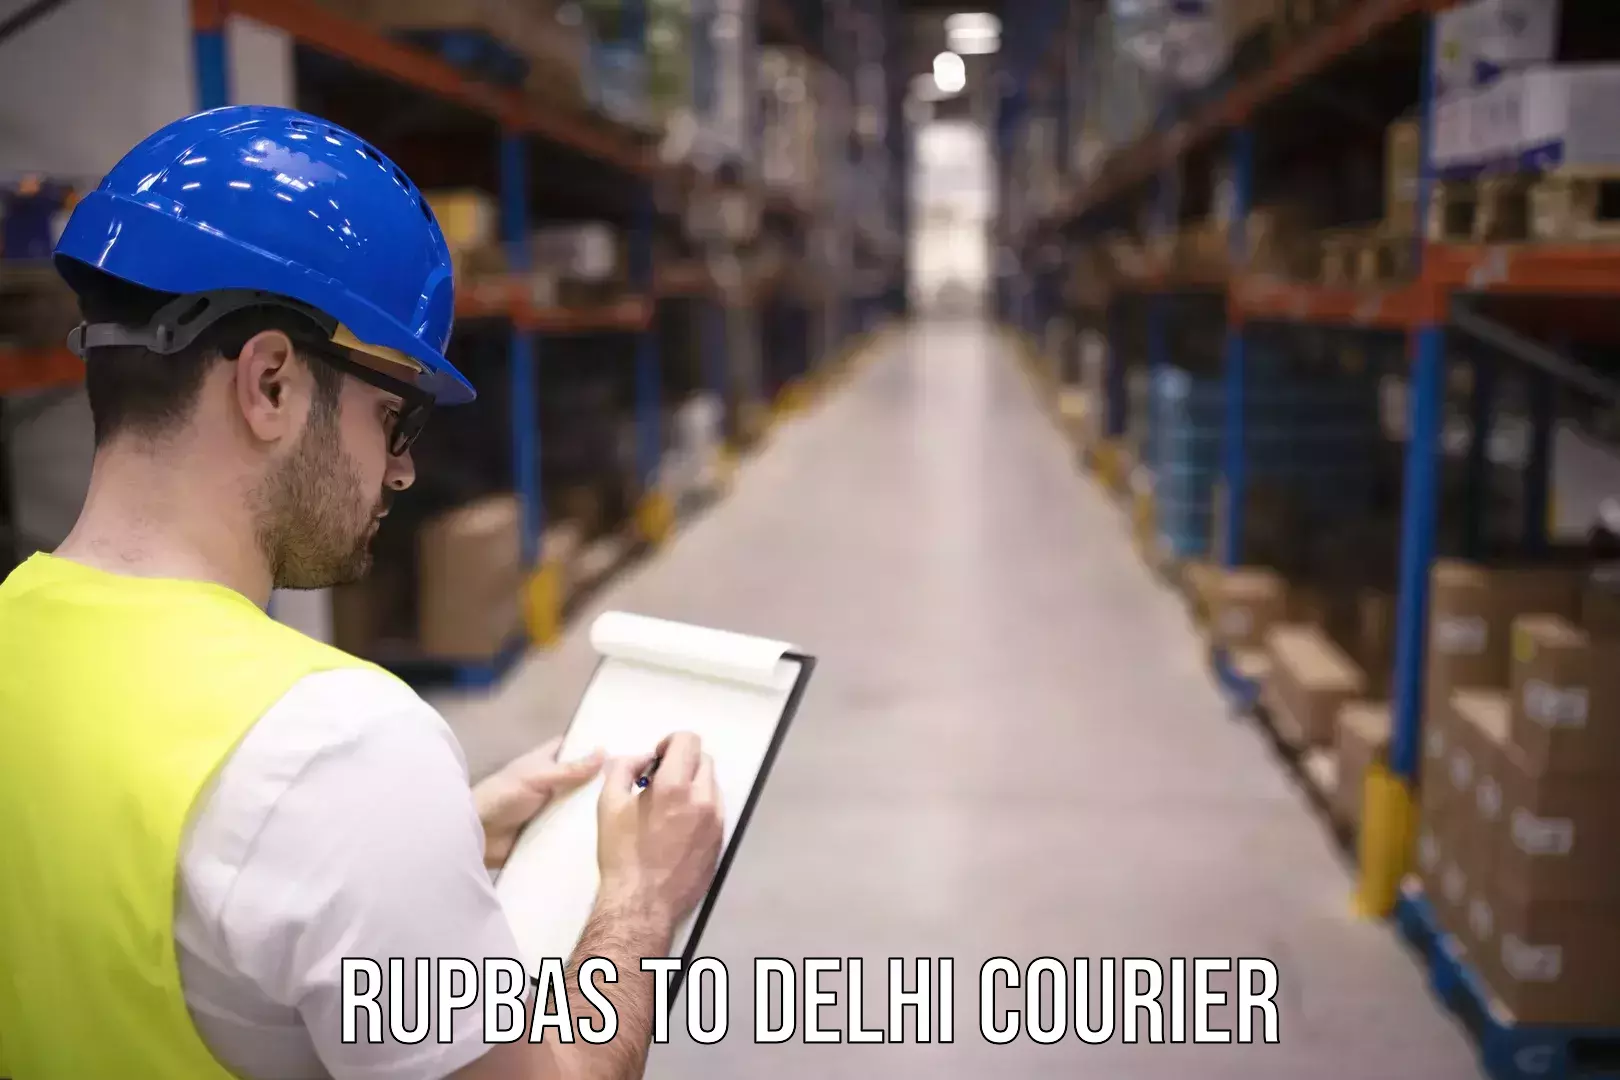 Courier service partnerships Rupbas to Sarojini Nagar